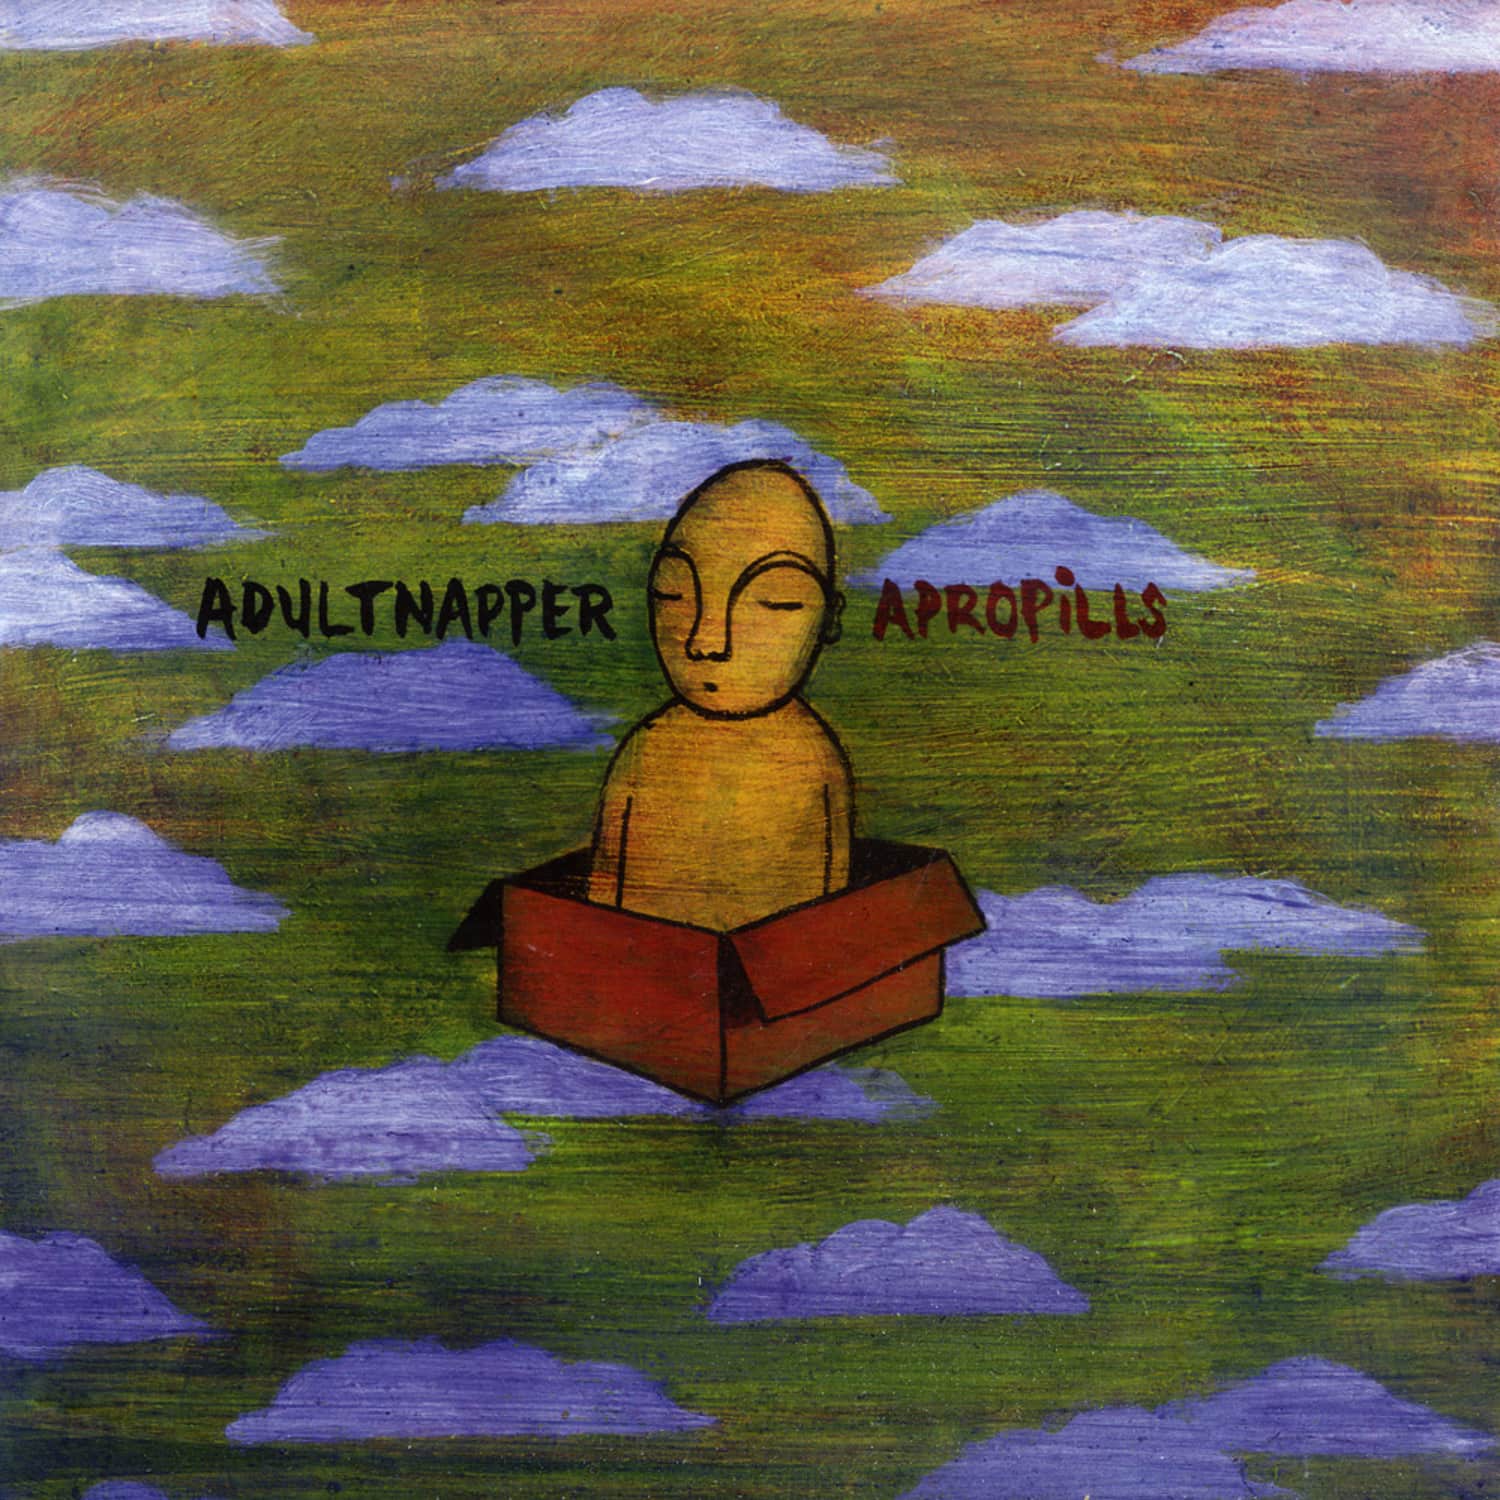 Adultnapper - APROPILLS